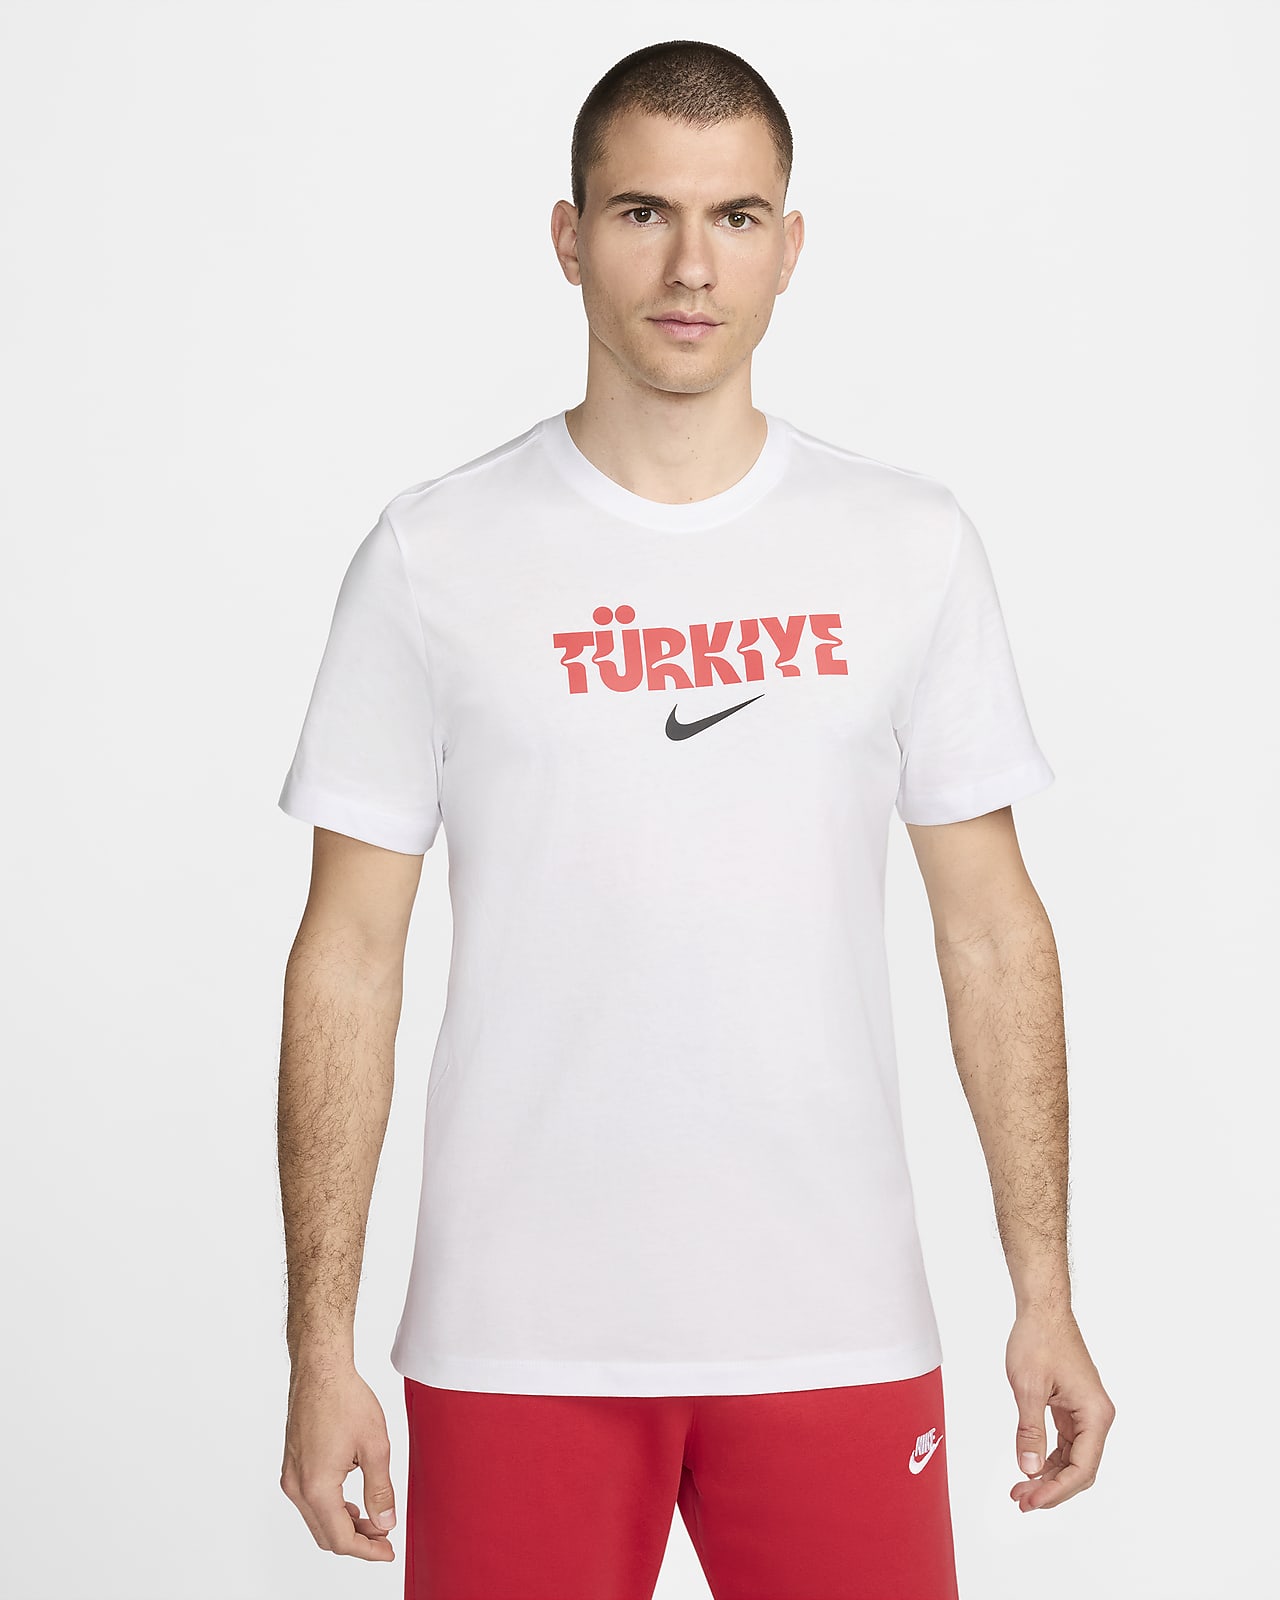 T-shirt de futebol Nike Crest Turquia para homem